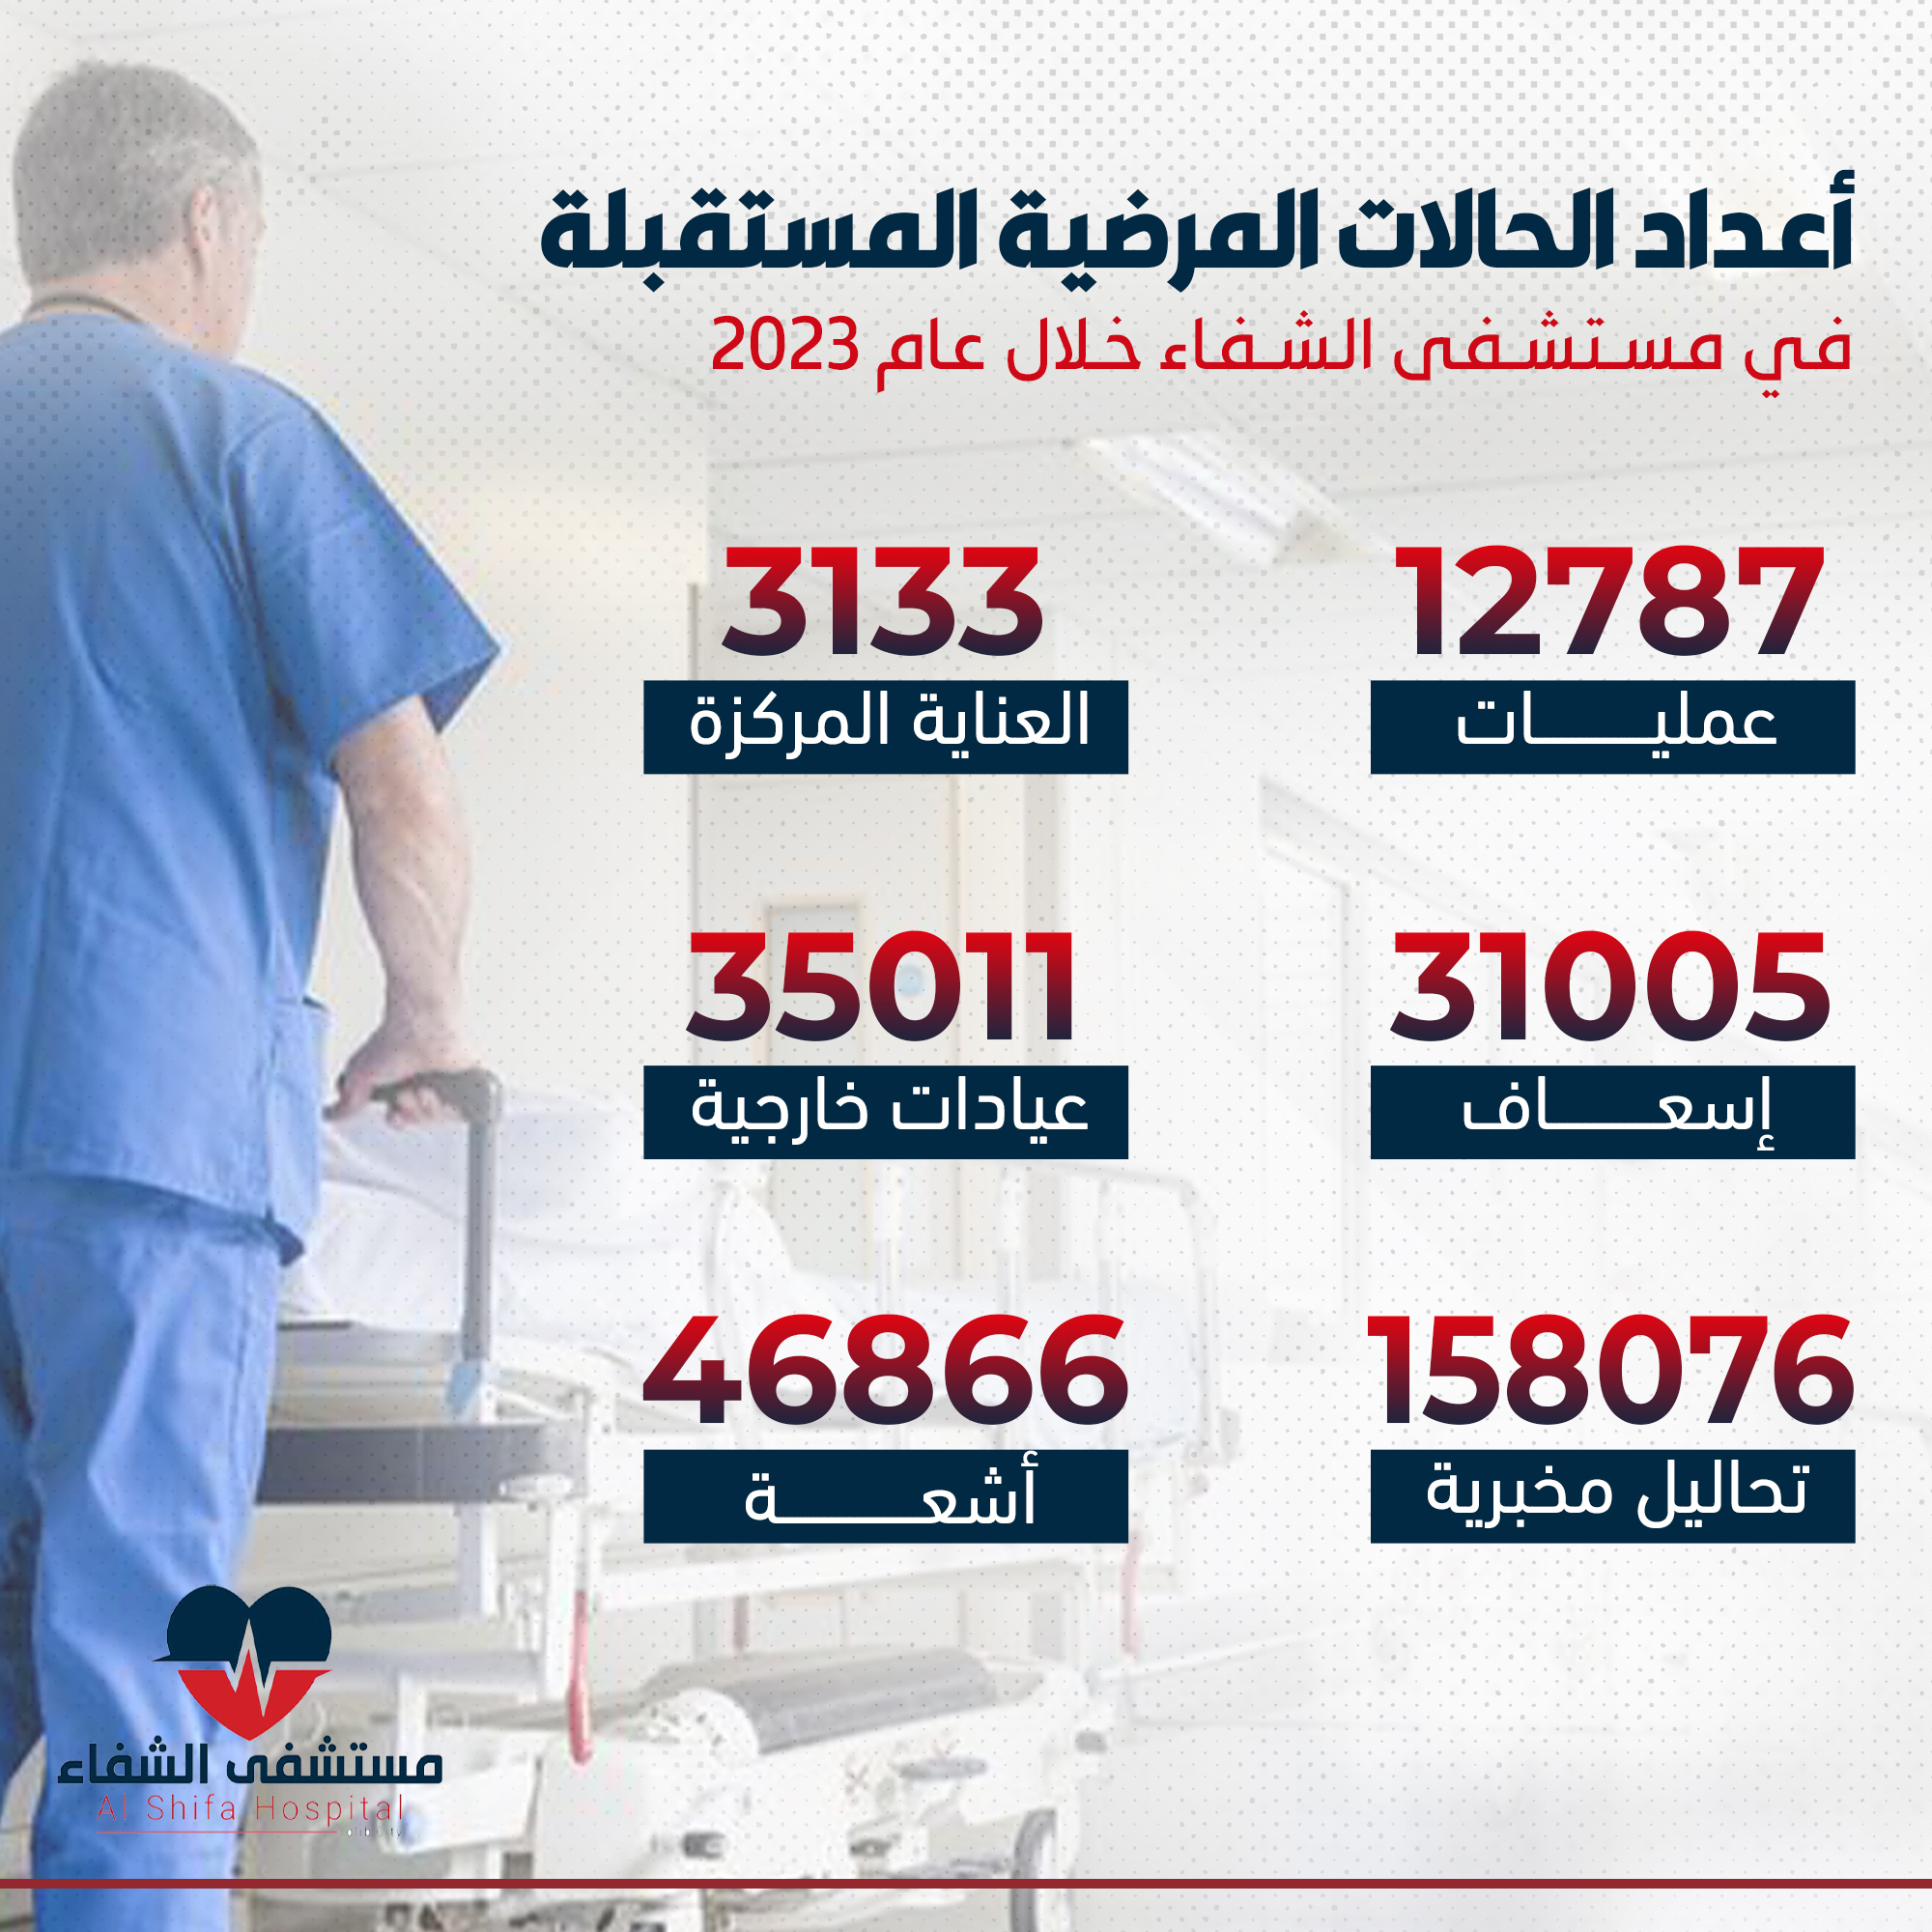 إنفوغرافيك يوضح أعداد الحالات المرضية المستقبلة في مستشفى الشفاء خلال عام 2023.